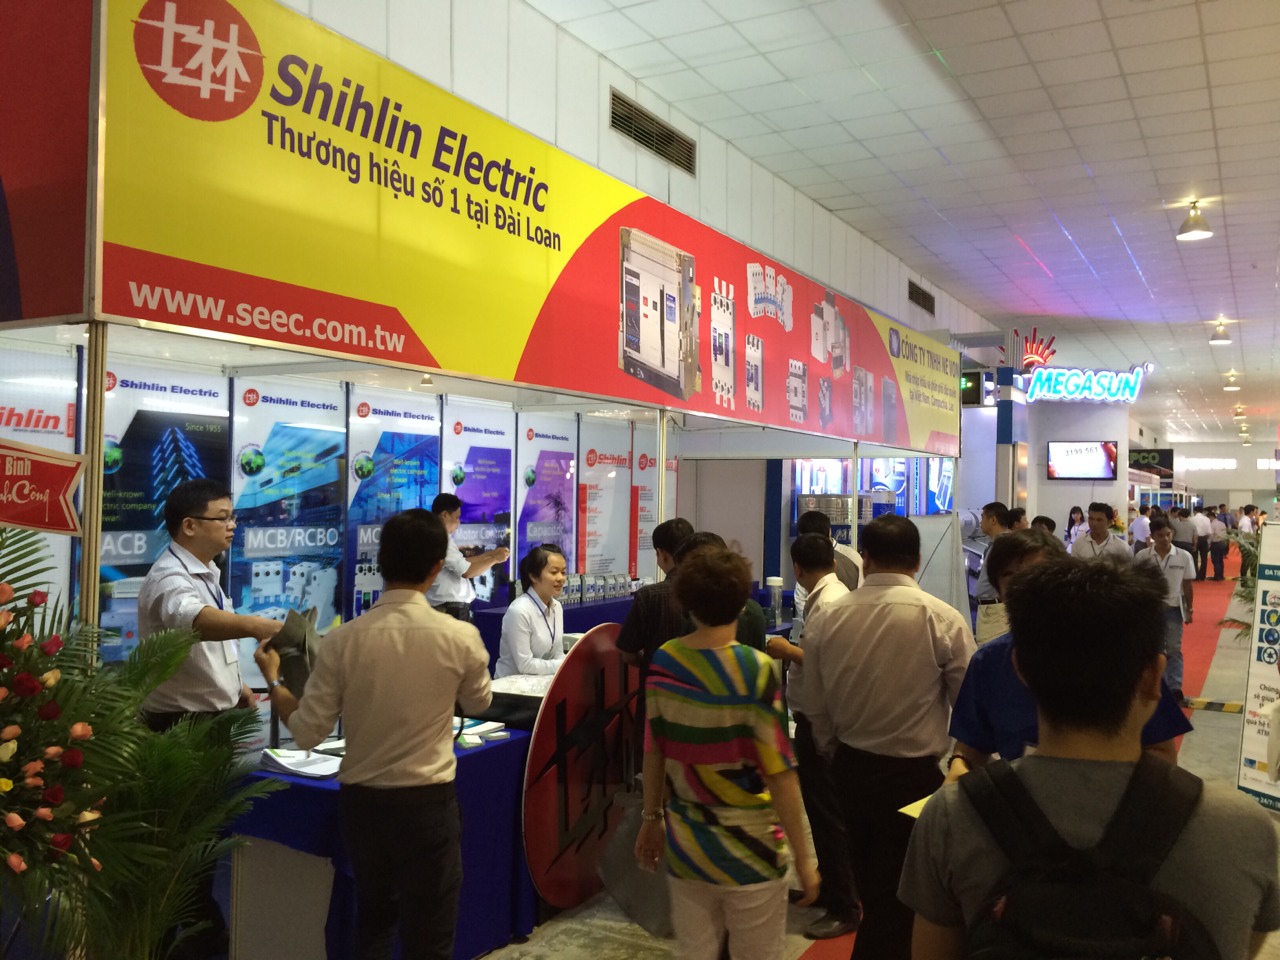 جناح Shihlin Electric في المعرض الدولي السابع للتكنولوجيا والمعدات الكهربائية - فيتنام ETE 2014